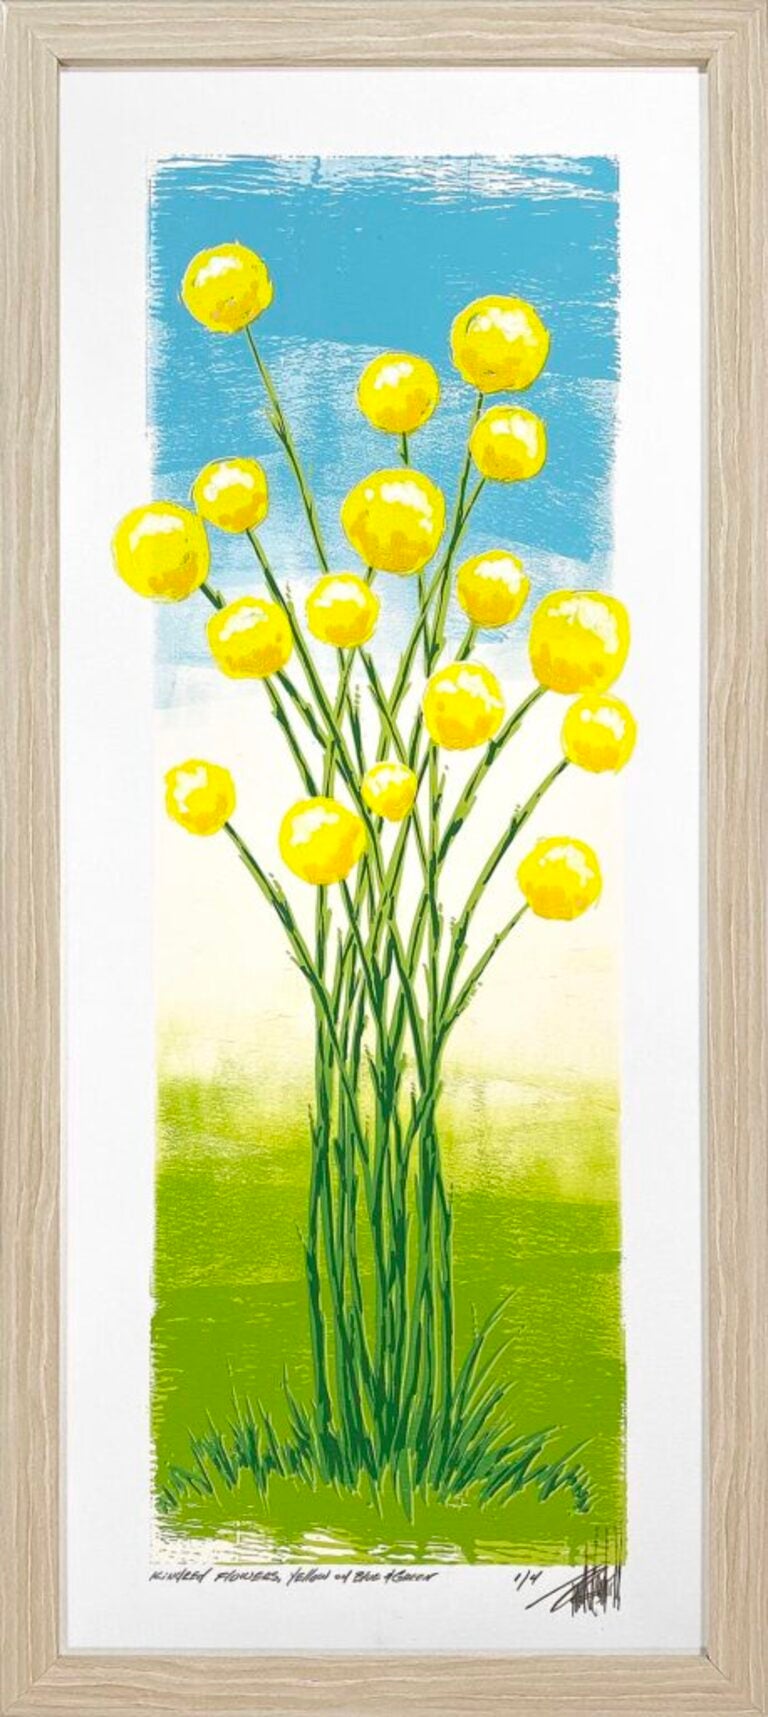 Kindred-Blumen, Gelb auf Blau und Grn (1/4) – Print von Terrell Thornhill 